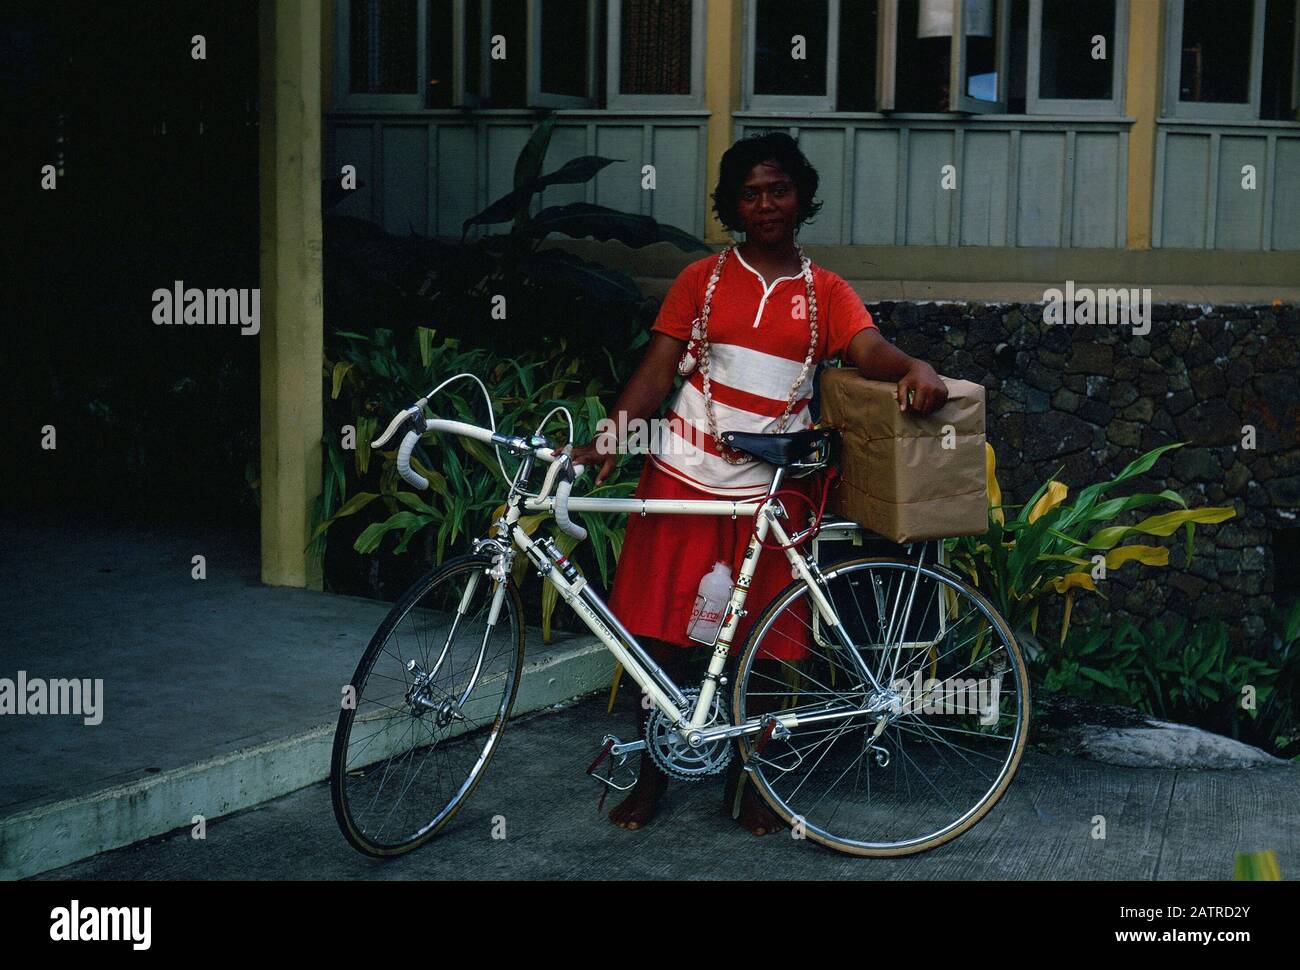 Photographie vernaculaire prise sur un film analogique de 35 mm transparent, considérée comme une femme en robe rouge et blanche à vélo rouge, 1970. Les principaux sujets/objets détectés incluent vélo et véhicule. () Banque D'Images